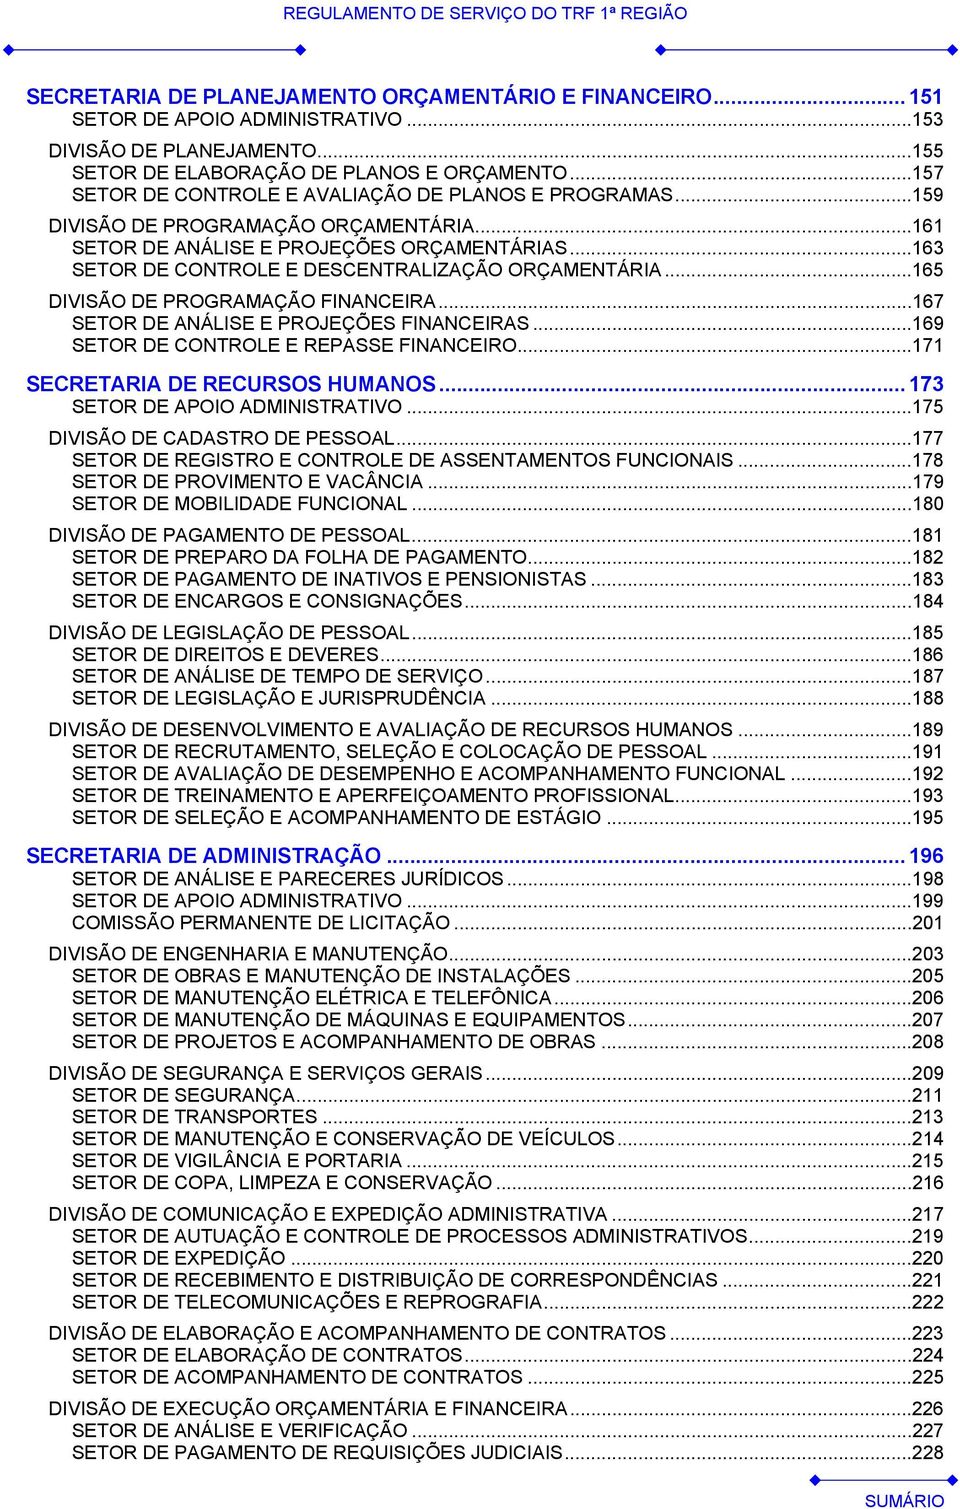 ..163 SETOR DE CONTROLE E DESCENTRALIZAÇÃO ORÇAMENTÁRIA...165 DIVISÃO DE PROGRAMAÇÃO FINANCEIRA...167 SETOR DE ANÁLISE E PROJEÇÕES FINANCEIRAS...169 SETOR DE CONTROLE E REPASSE FINANCEIRO.